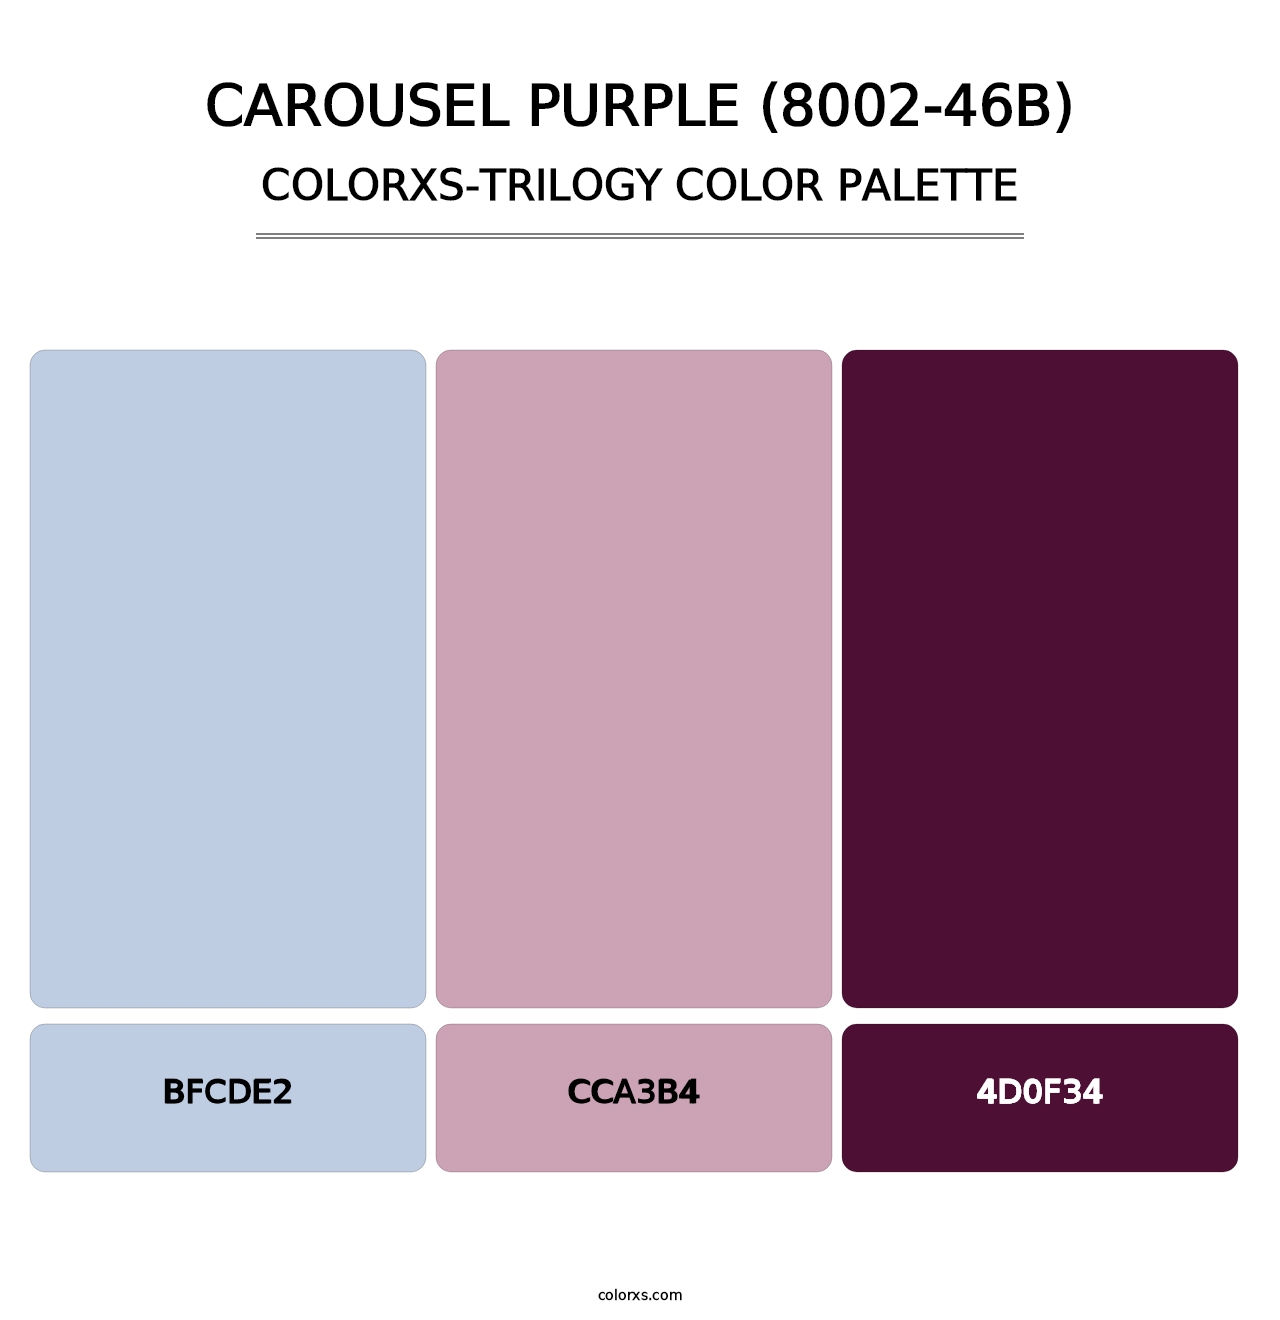 Carousel Purple (8002-46B) - Colorxs Trilogy Palette